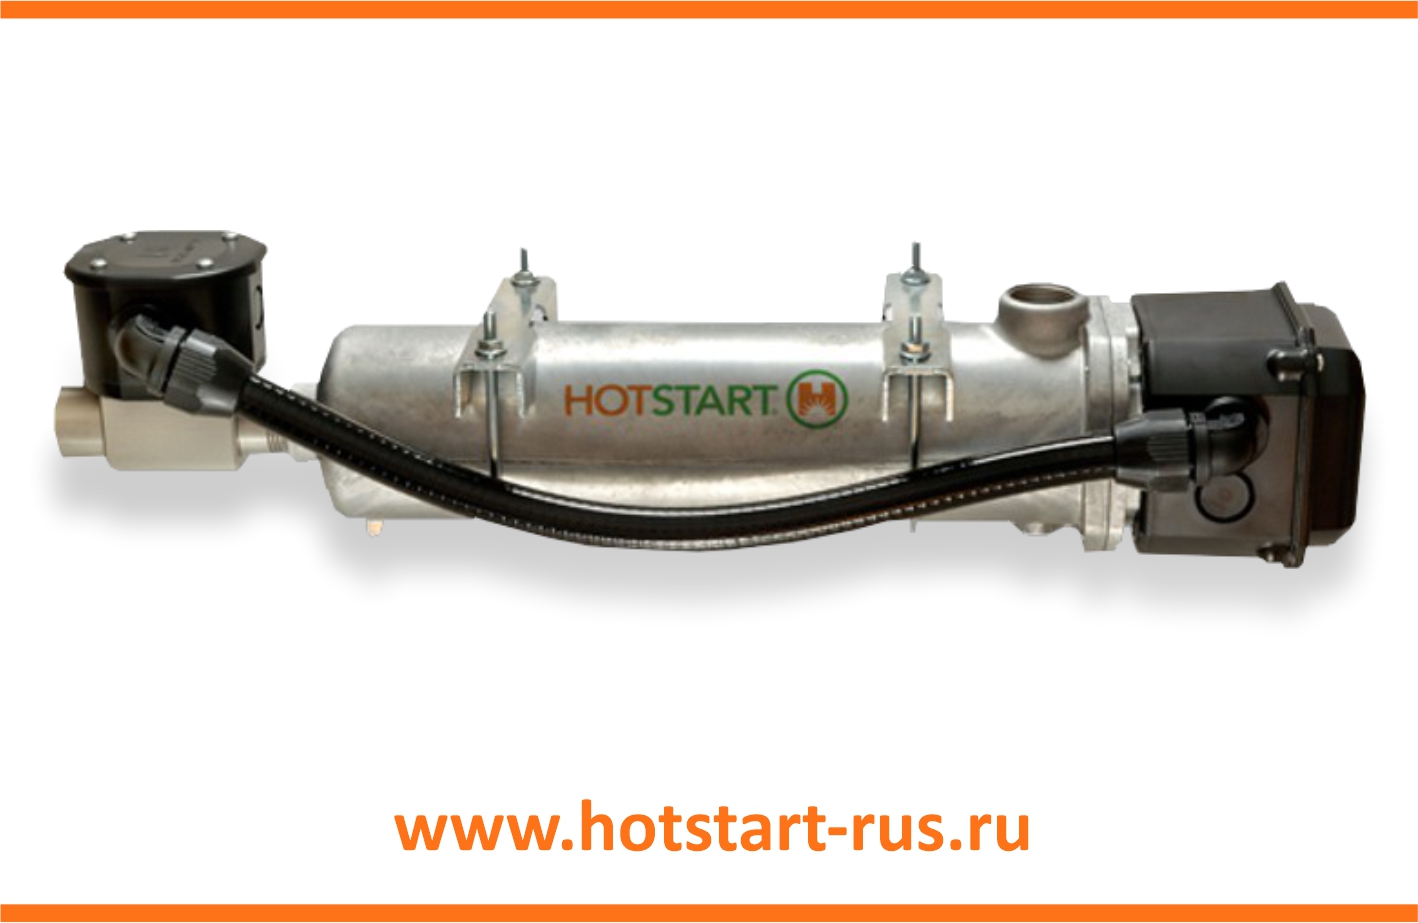 Предпусковой подогреватель двигателя Hotstart 4,0 кВт CL 1402ХХ-200